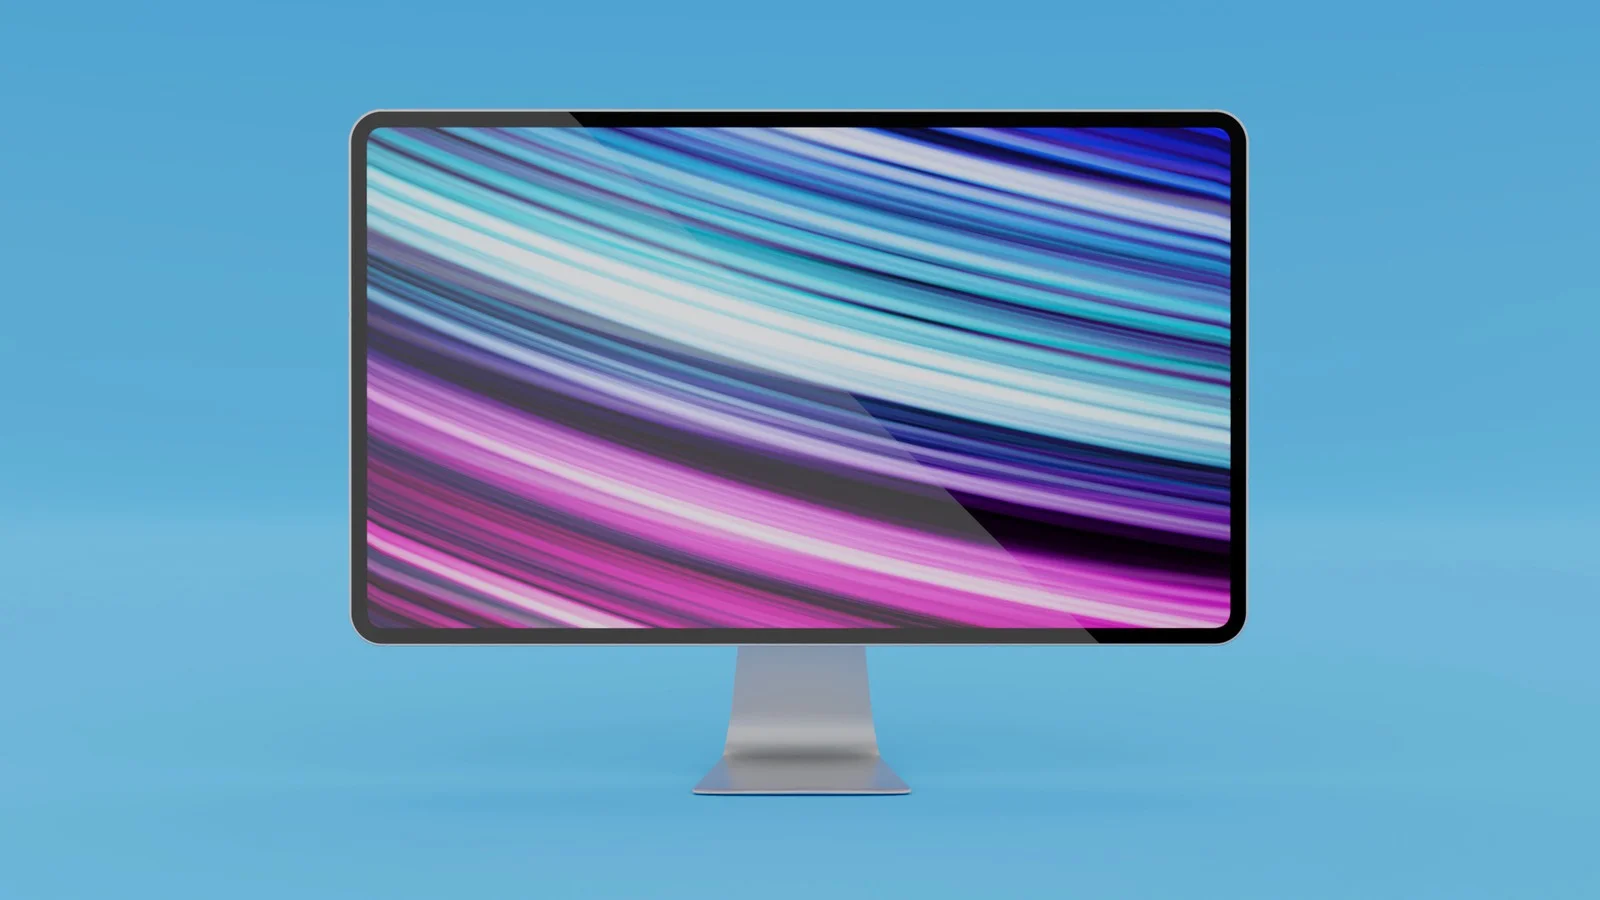 Что покажет Apple на WWDC 2020: iOS 14, AirPods Studio, новый iMac, Apple TV 4K и другое - фото 5